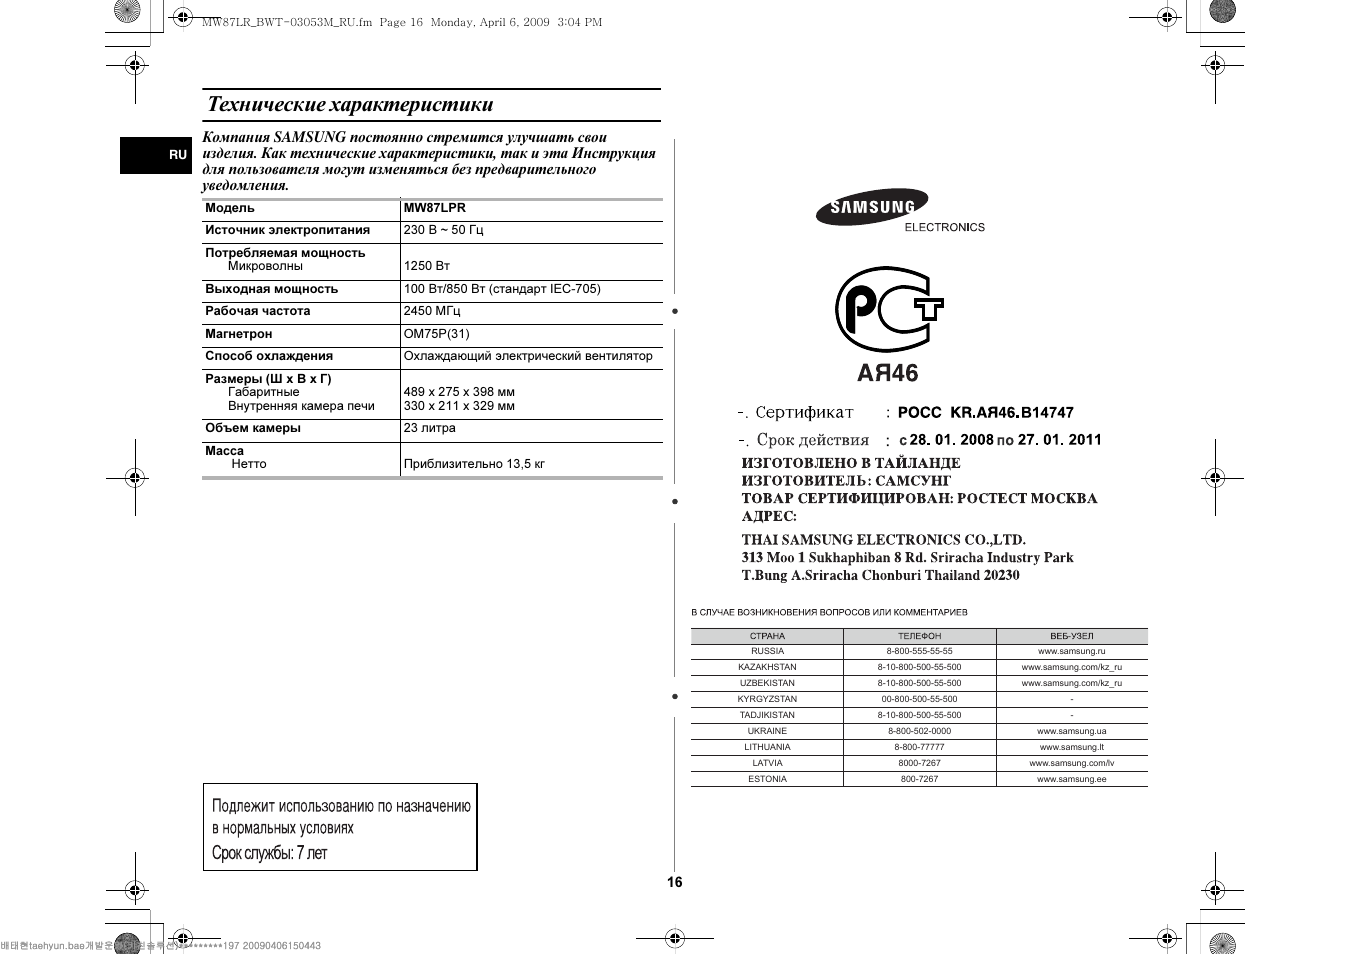 Описание характеристики инструкция. Samsung MW 87lpr. Samsung 1080 характеристика и инструкция по эксплуатации. Сейф Sentry 1236 инструкция по эксплуатации.